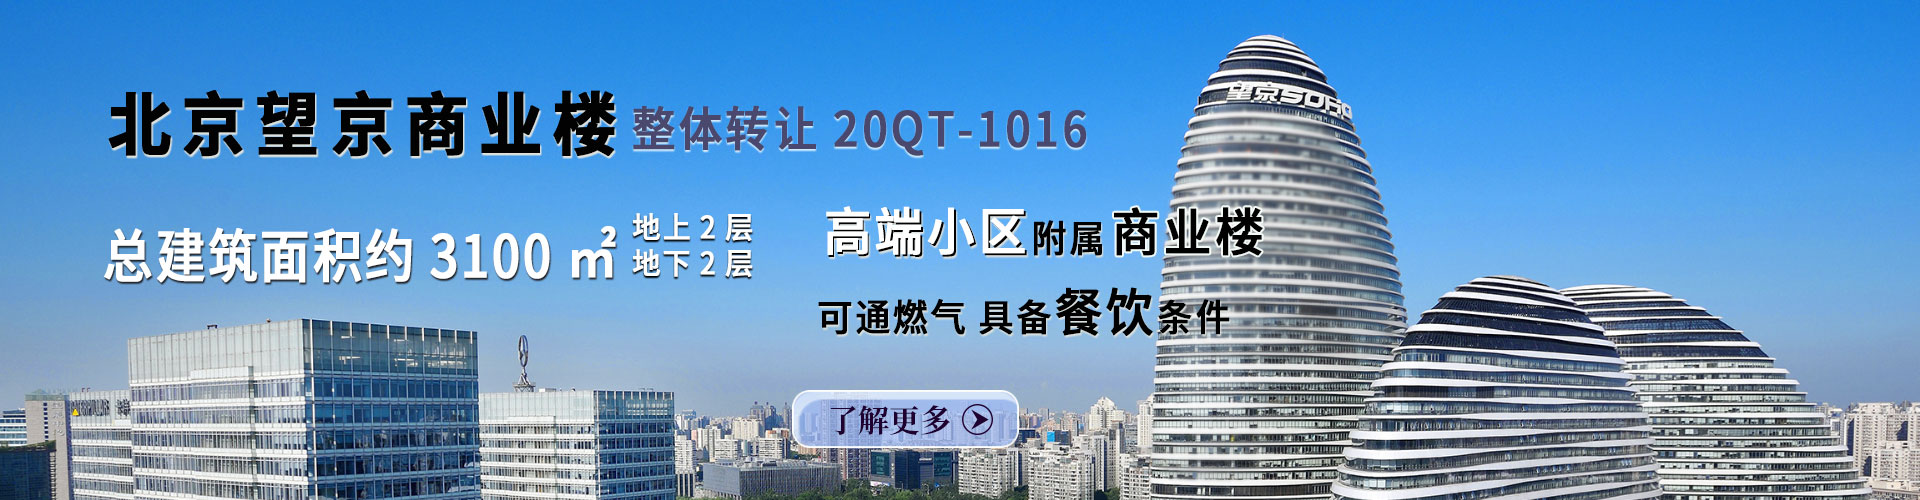 商业楼|北京市望京商圈3100平米独栋商业楼转让项目20QT-1016